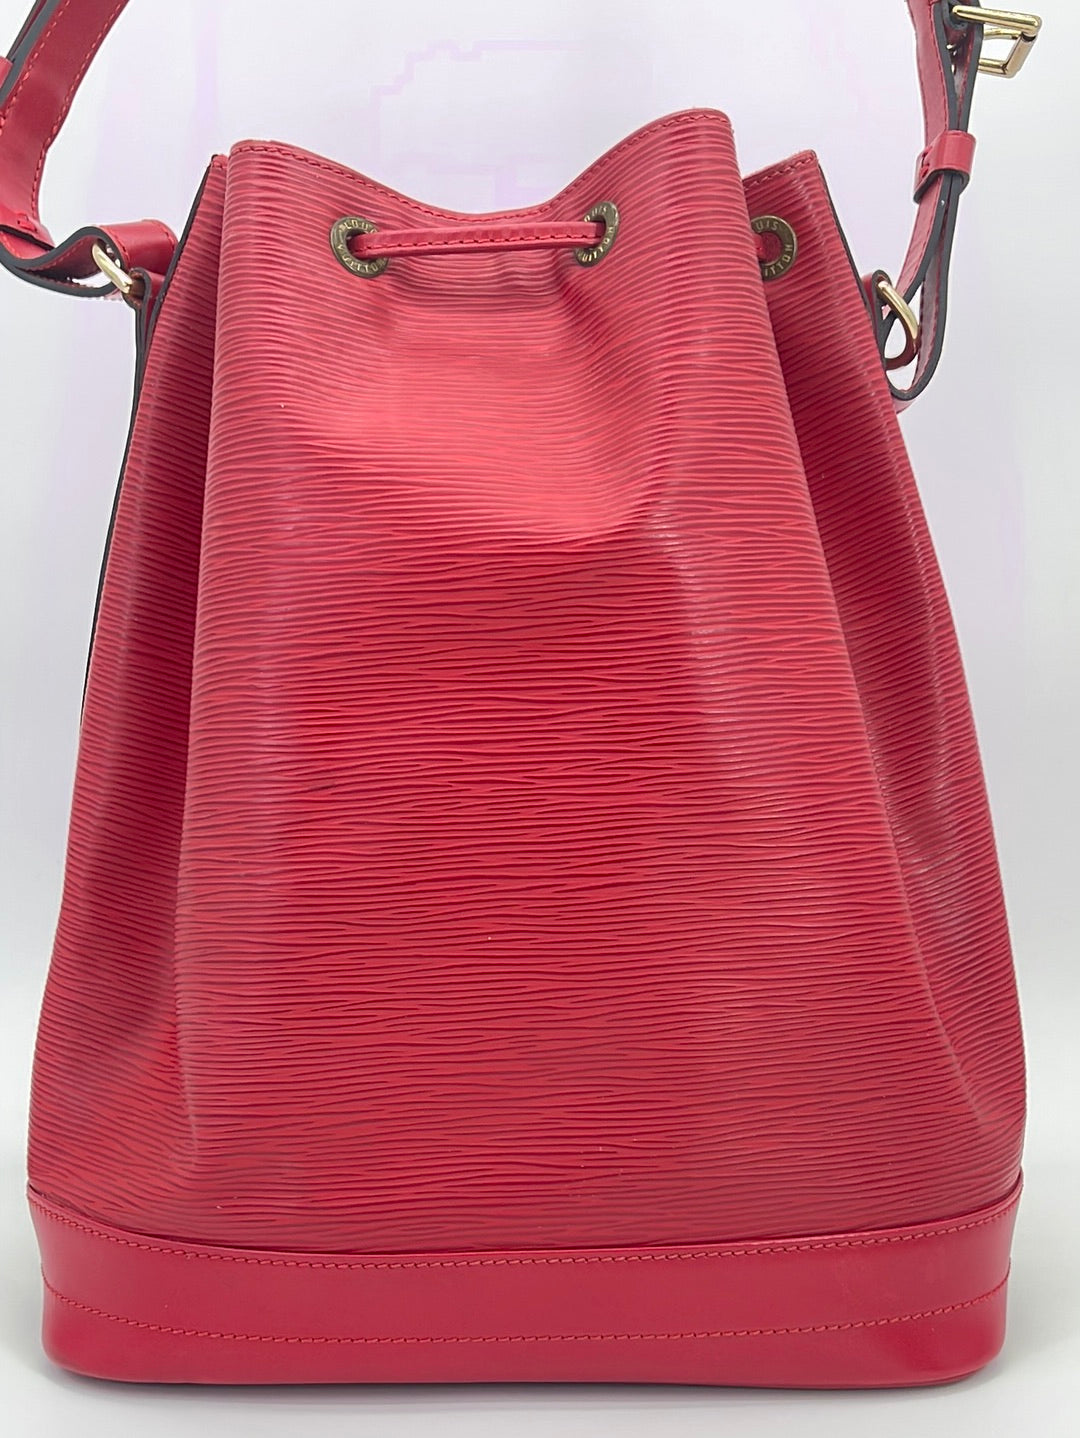 Louis Vuitton - Authenticated Néonoé Handbag - Cloth Black Plain for Women, Very Good Condition